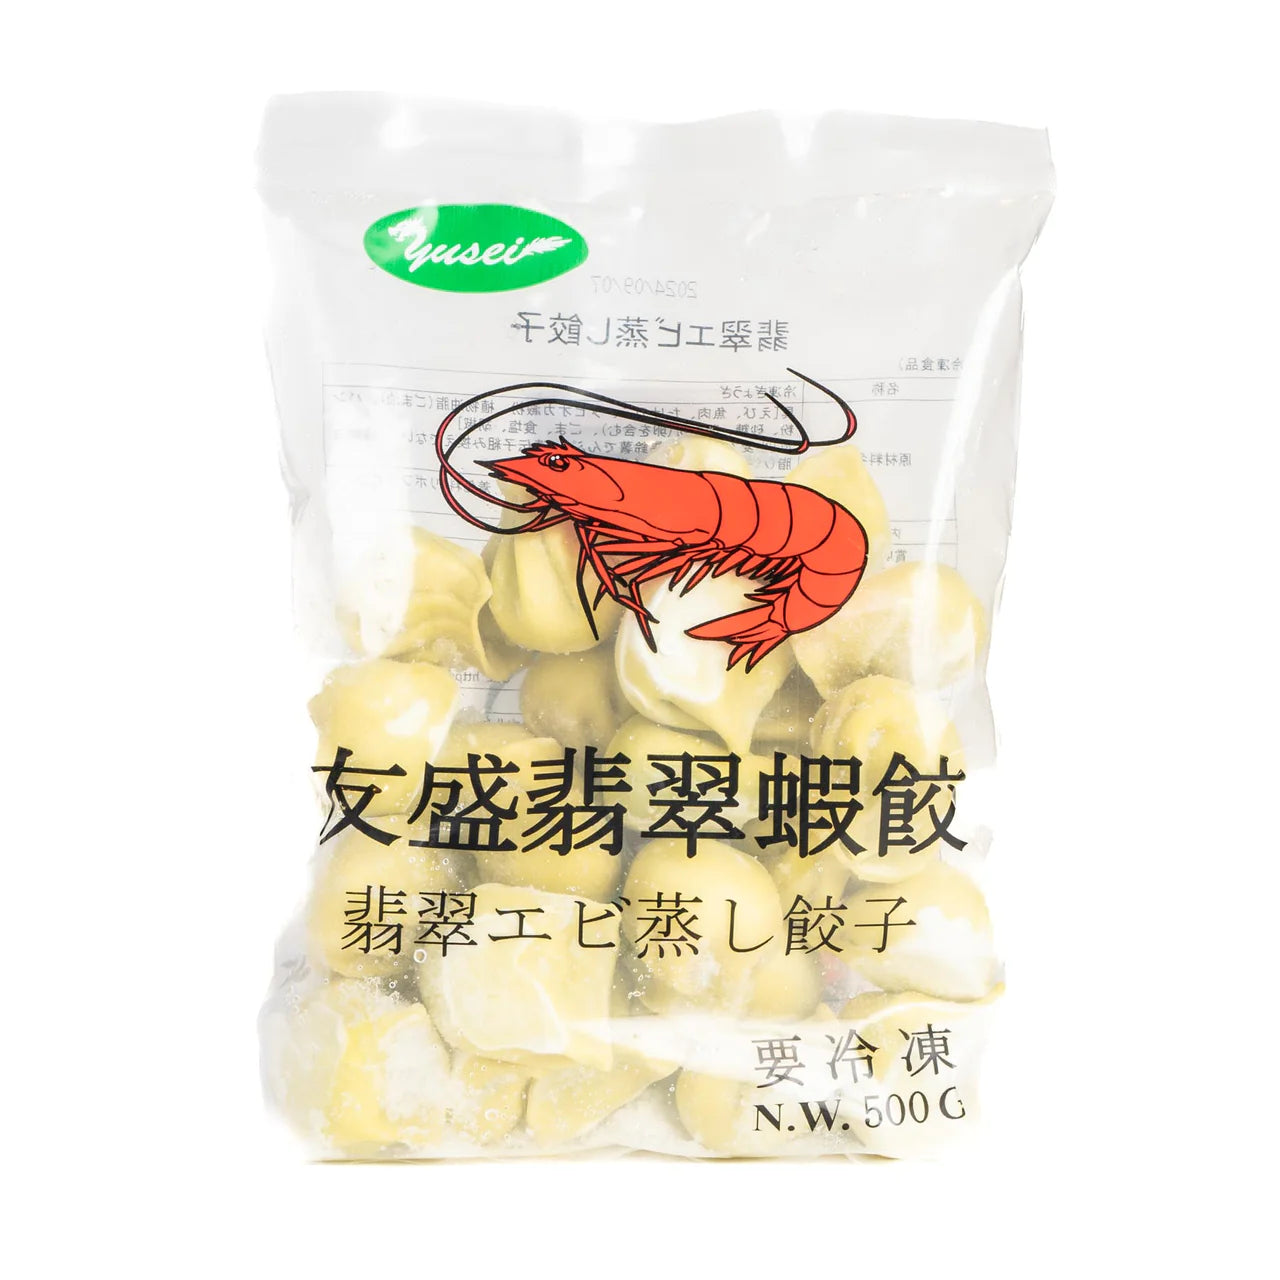 オンラインストア　–　500g　Steamed　Dumplings　Shrimp　亜州太陽市場　友盛　翡翠エビ蒸し餃子